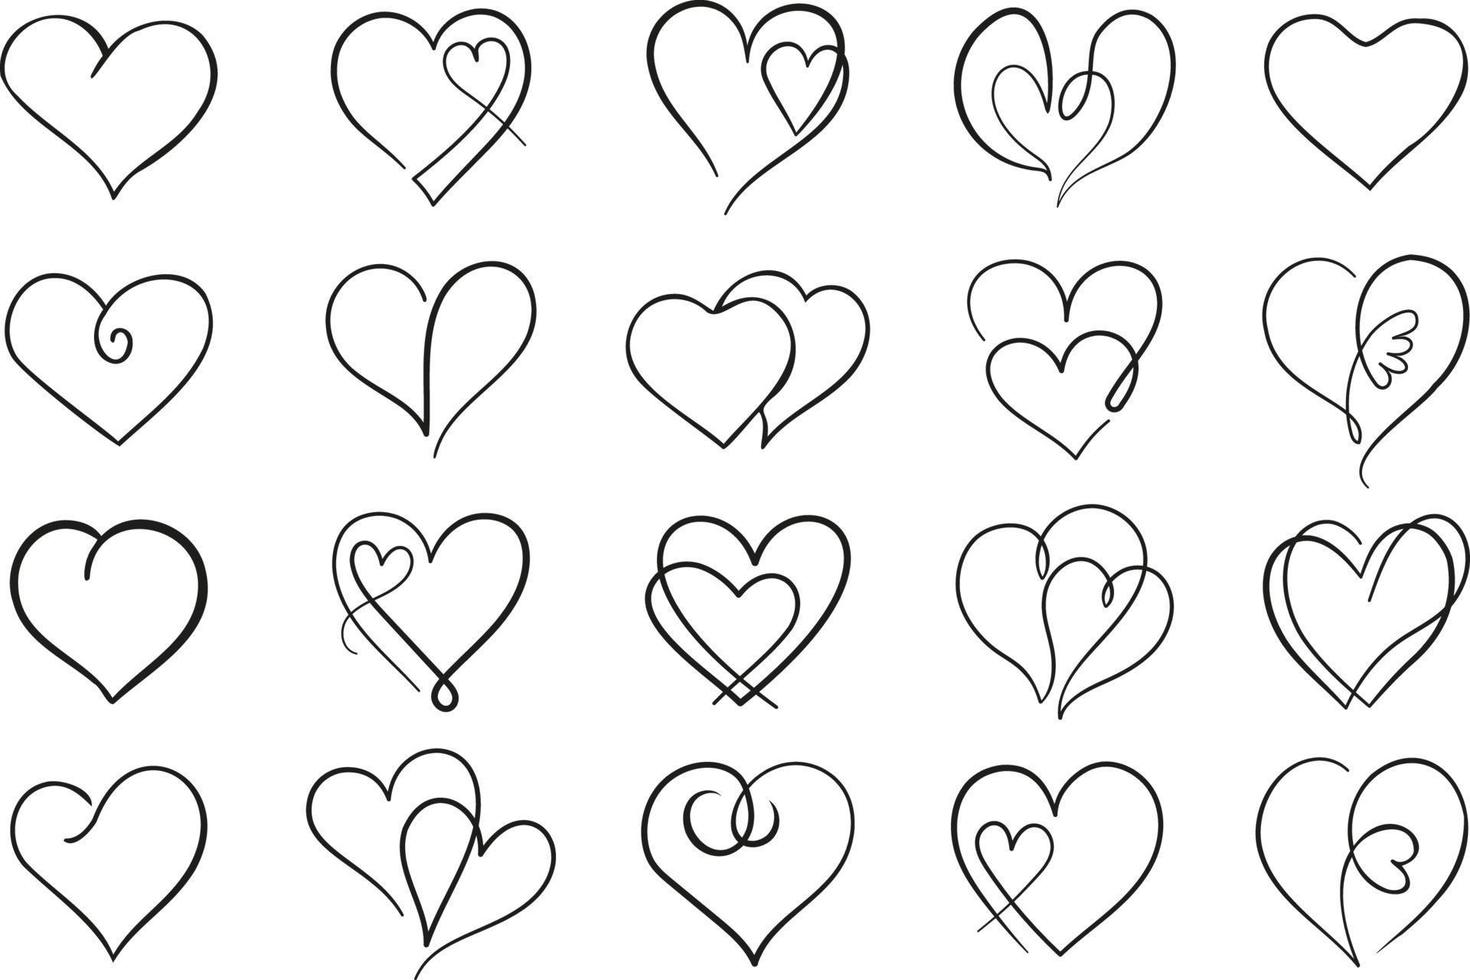 contorno vettoriale cuore set. raccolta di icone del cuore di linea sottile nera.